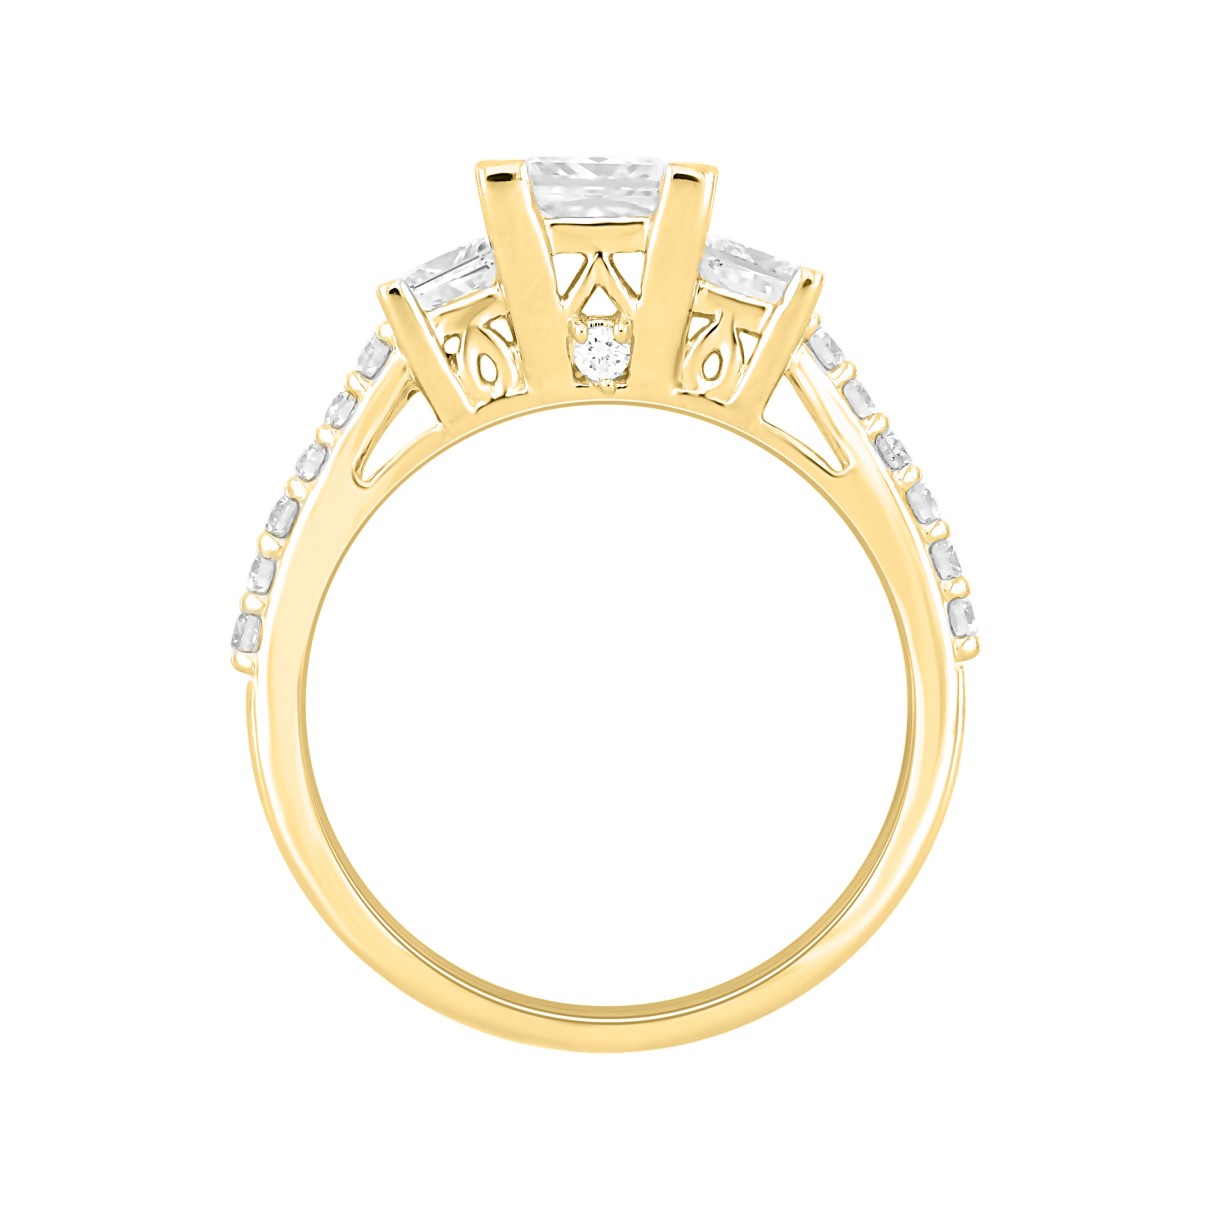 LADIES RING 1 3/4CT ROUND/PRINCESS DIAMOND 14K YELLOW GOLD (CENTER STONE PRINCESS DIAMOND 1CT )